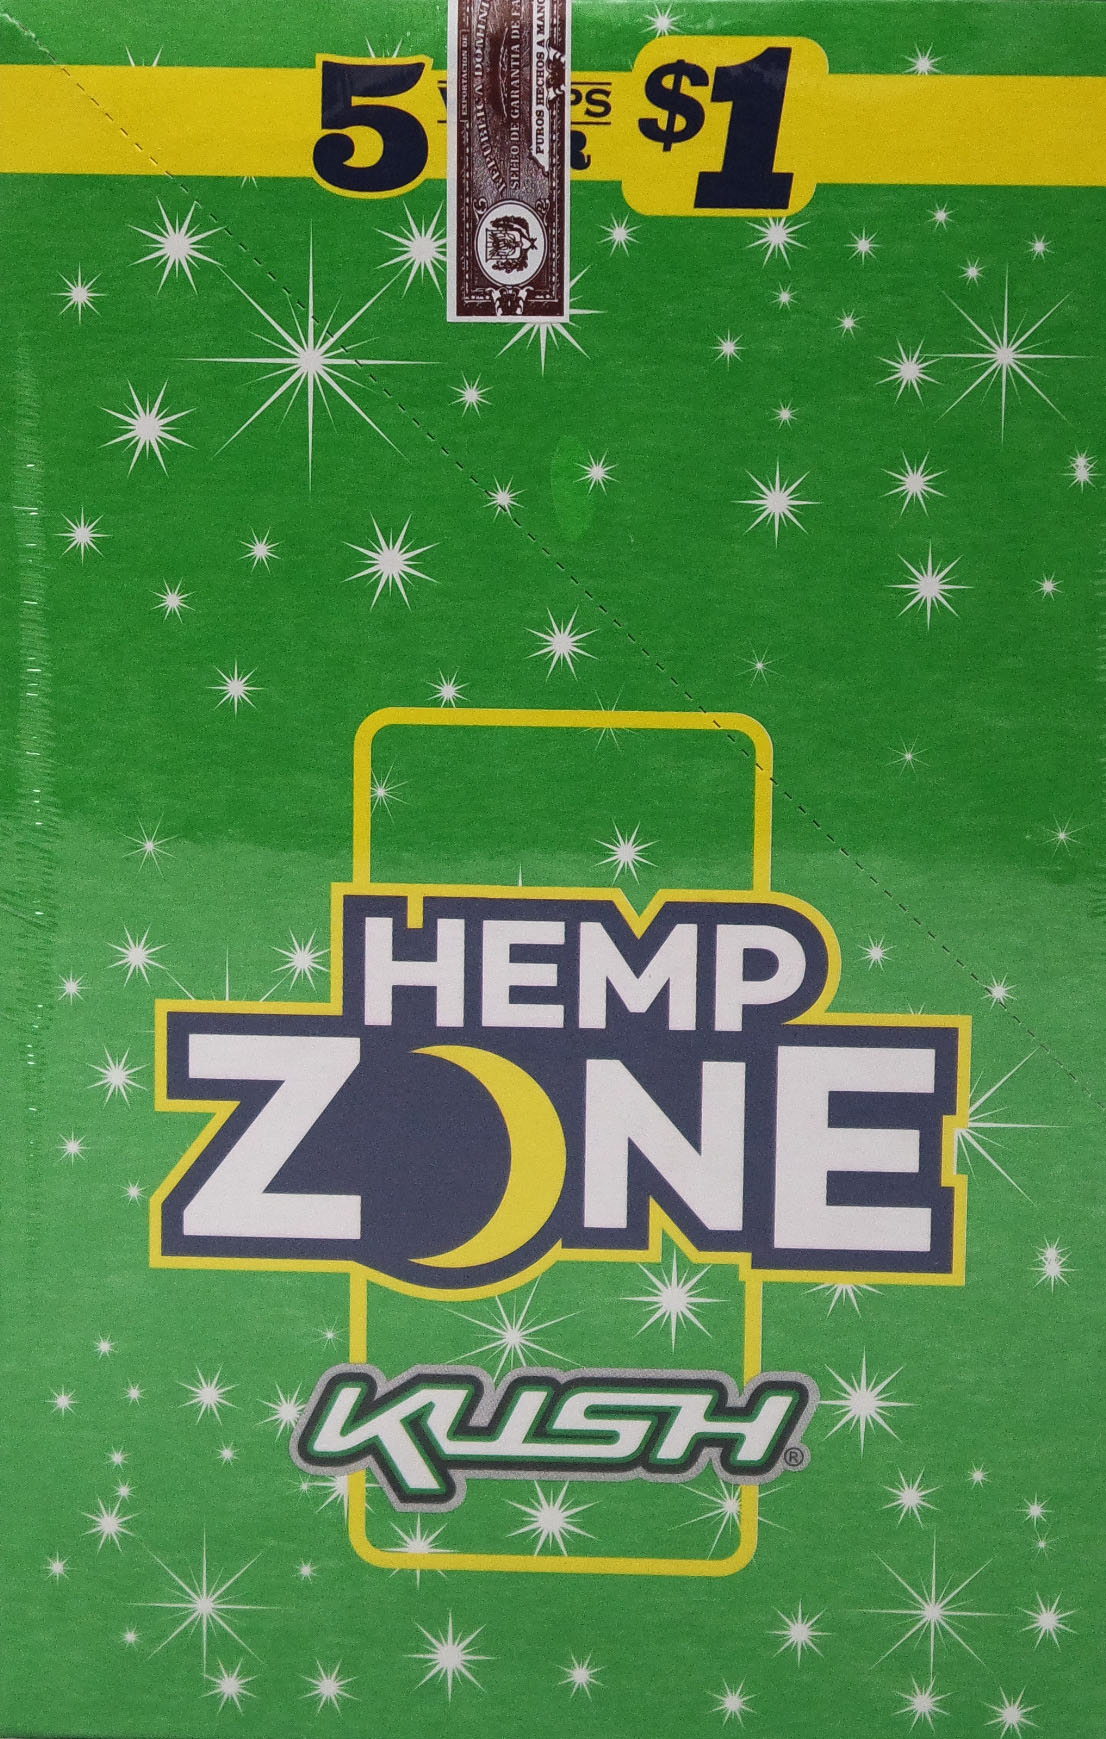 Hemp zone kush wraps 5/$1 15/5pk